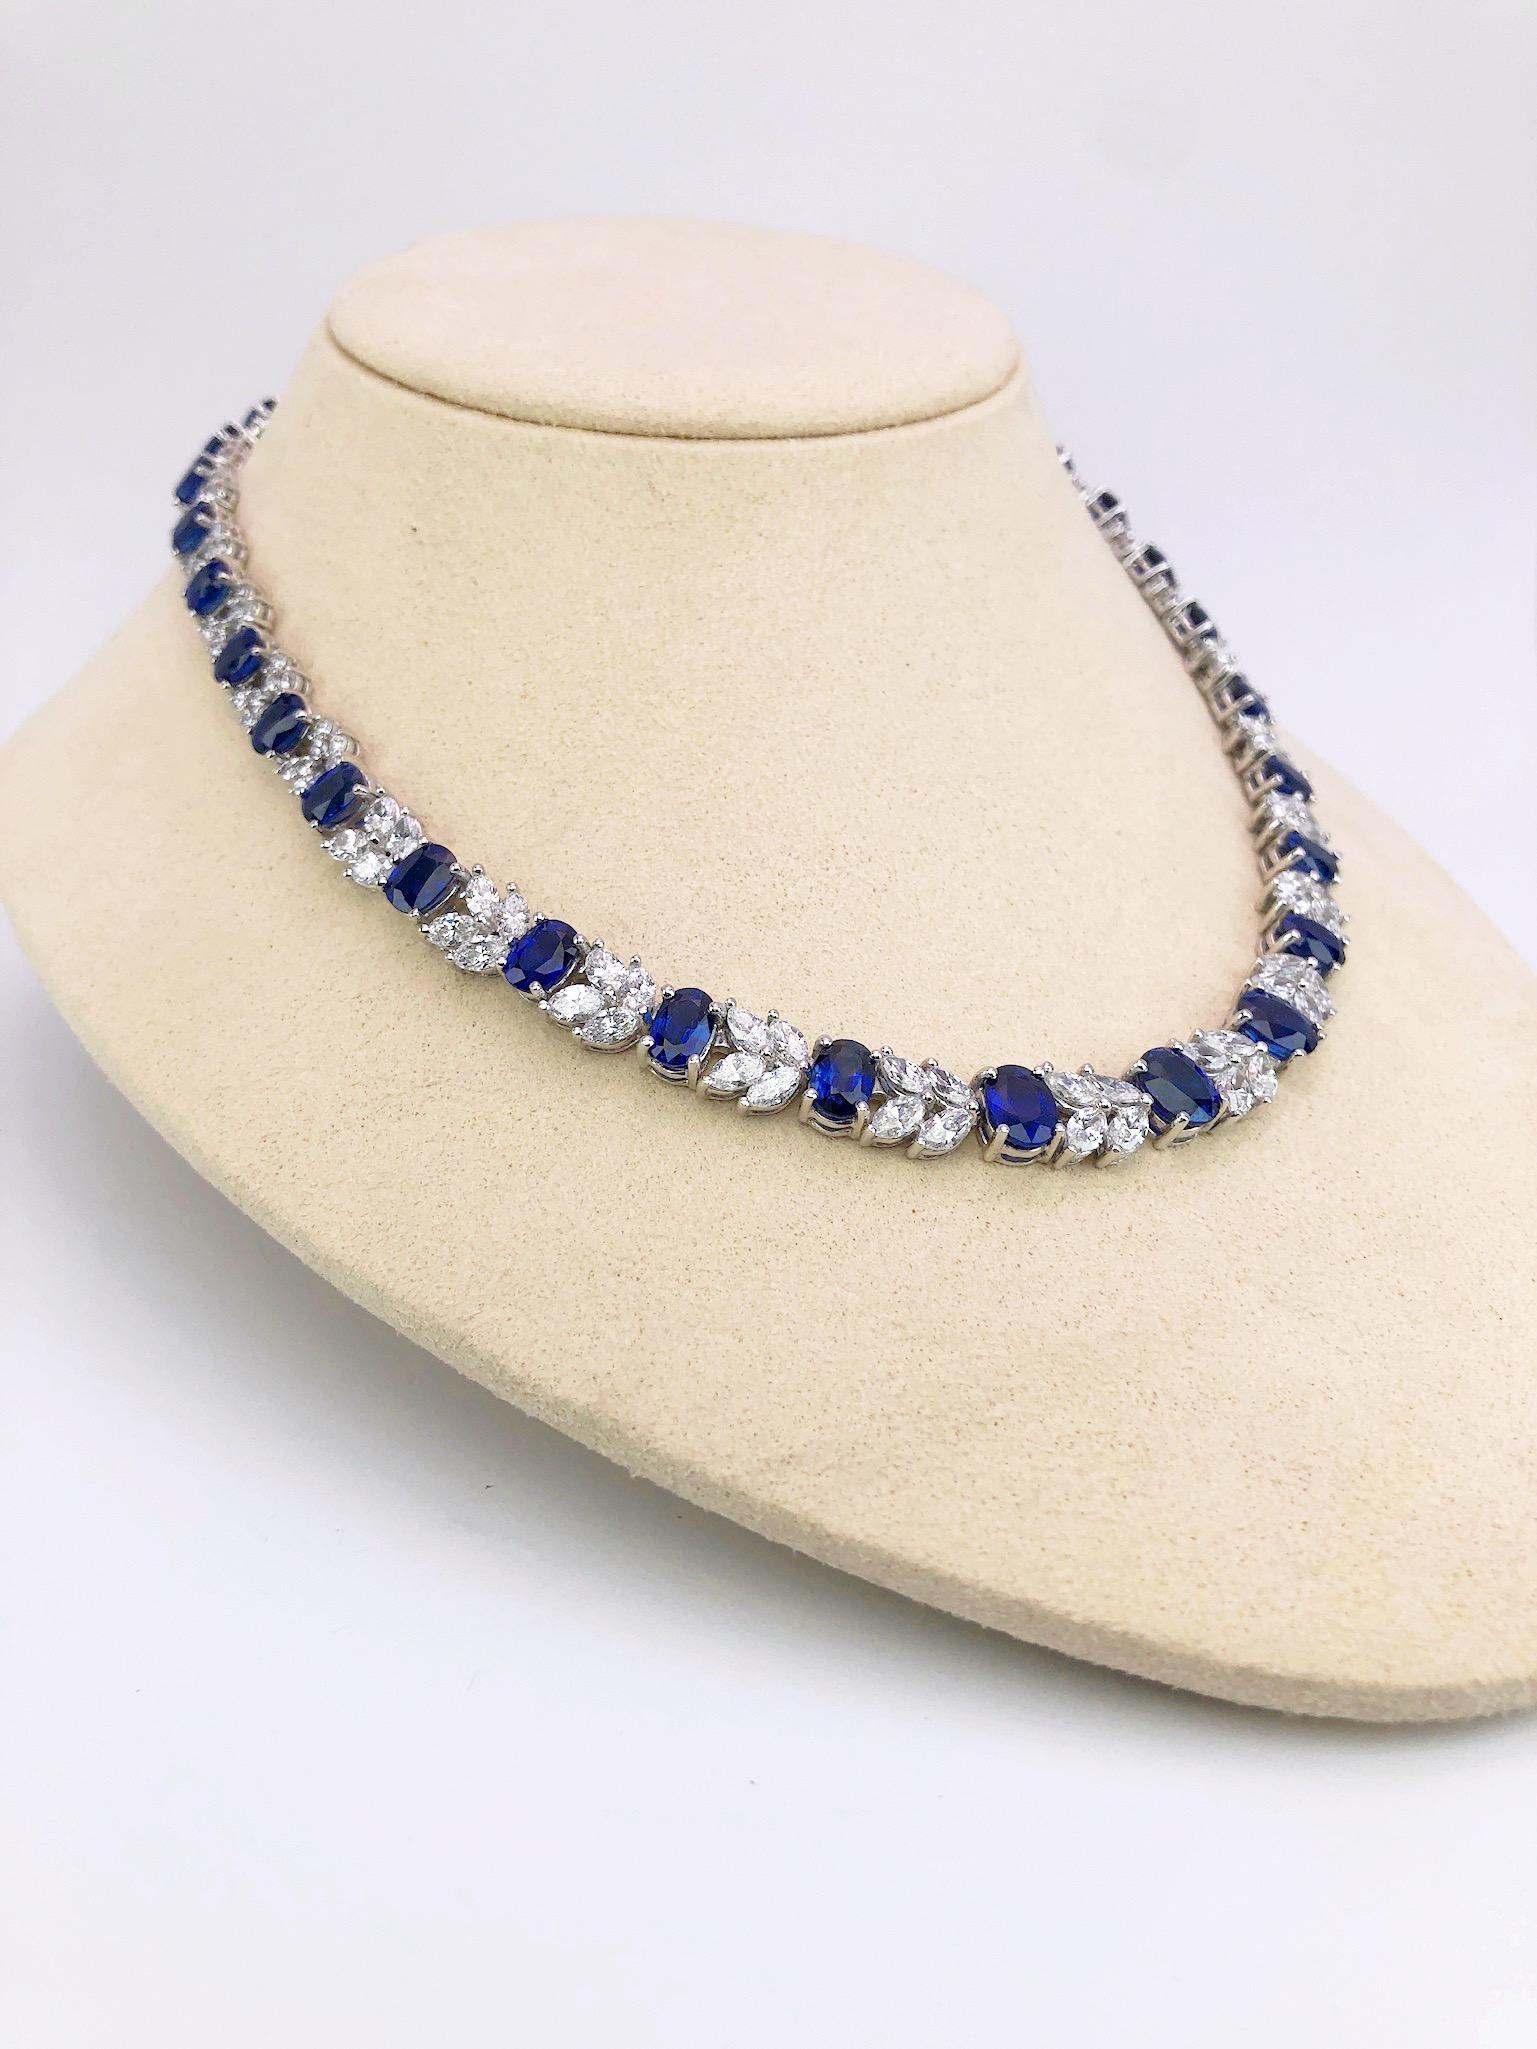 Oval Cut Platinum Necklace 33.70 Carat Oval Blue Sapphires and 13.22 Carat Diamonds